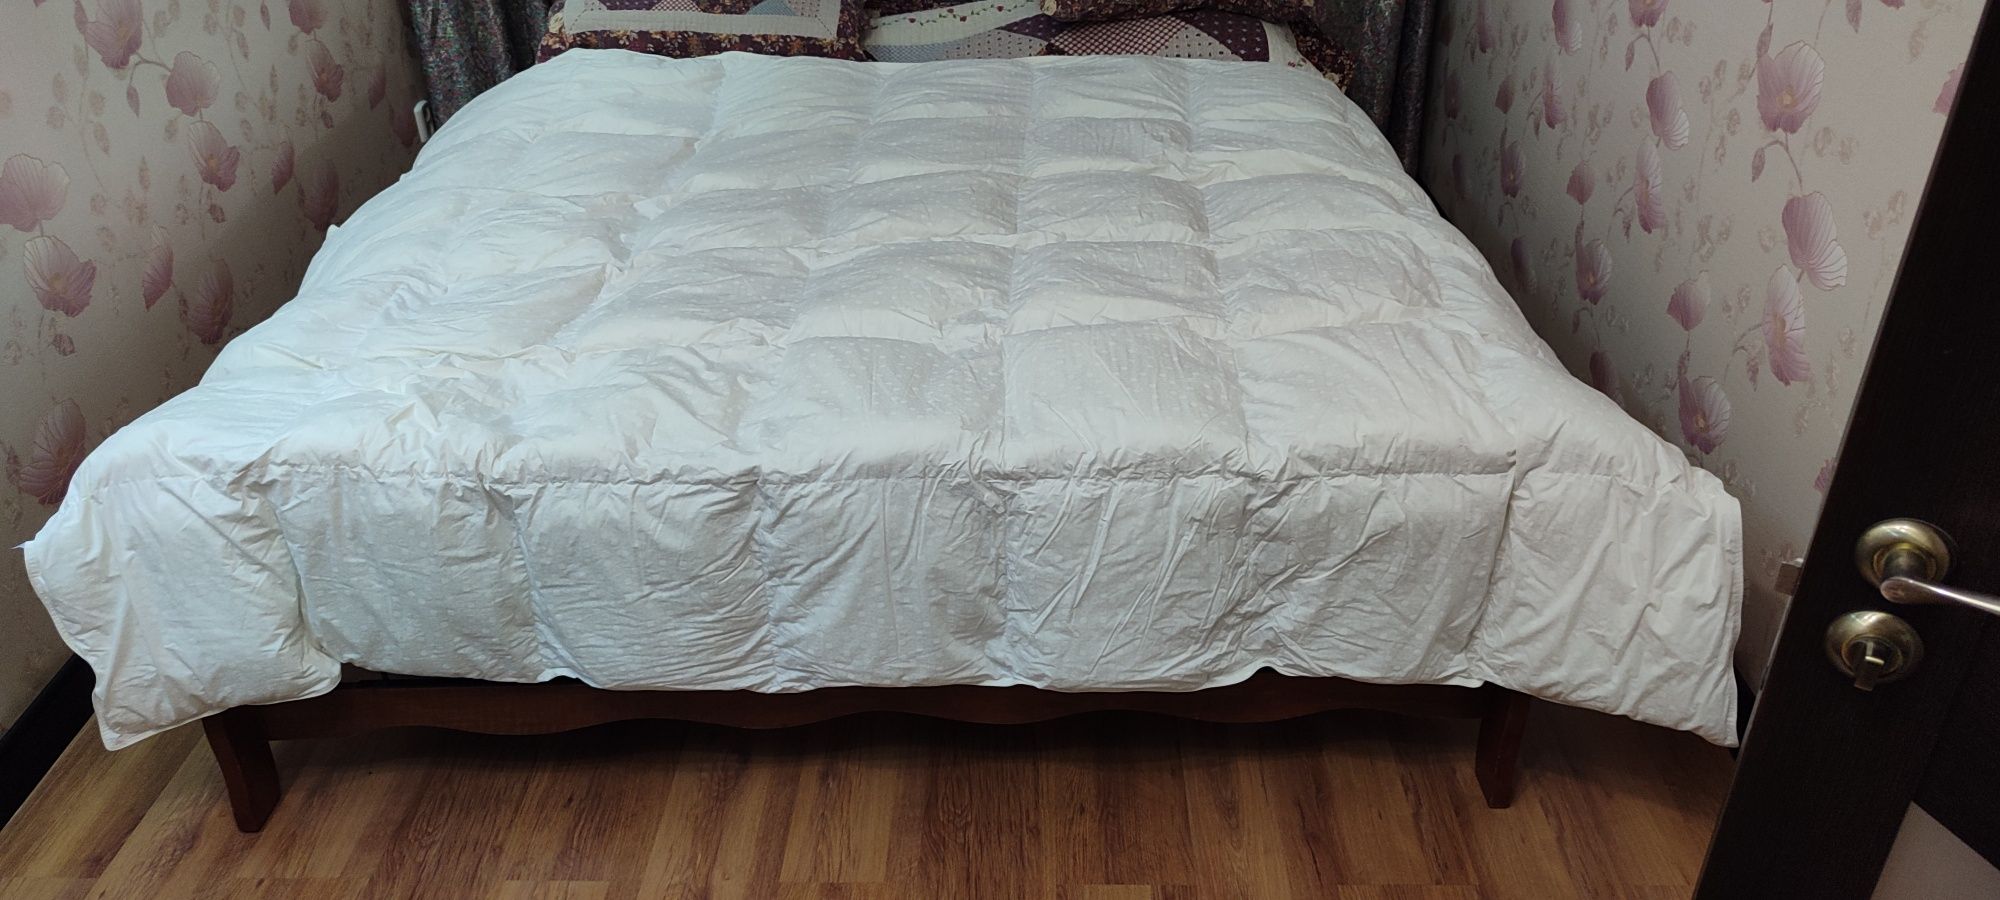 Французское одеяло, двух спальное, зимние